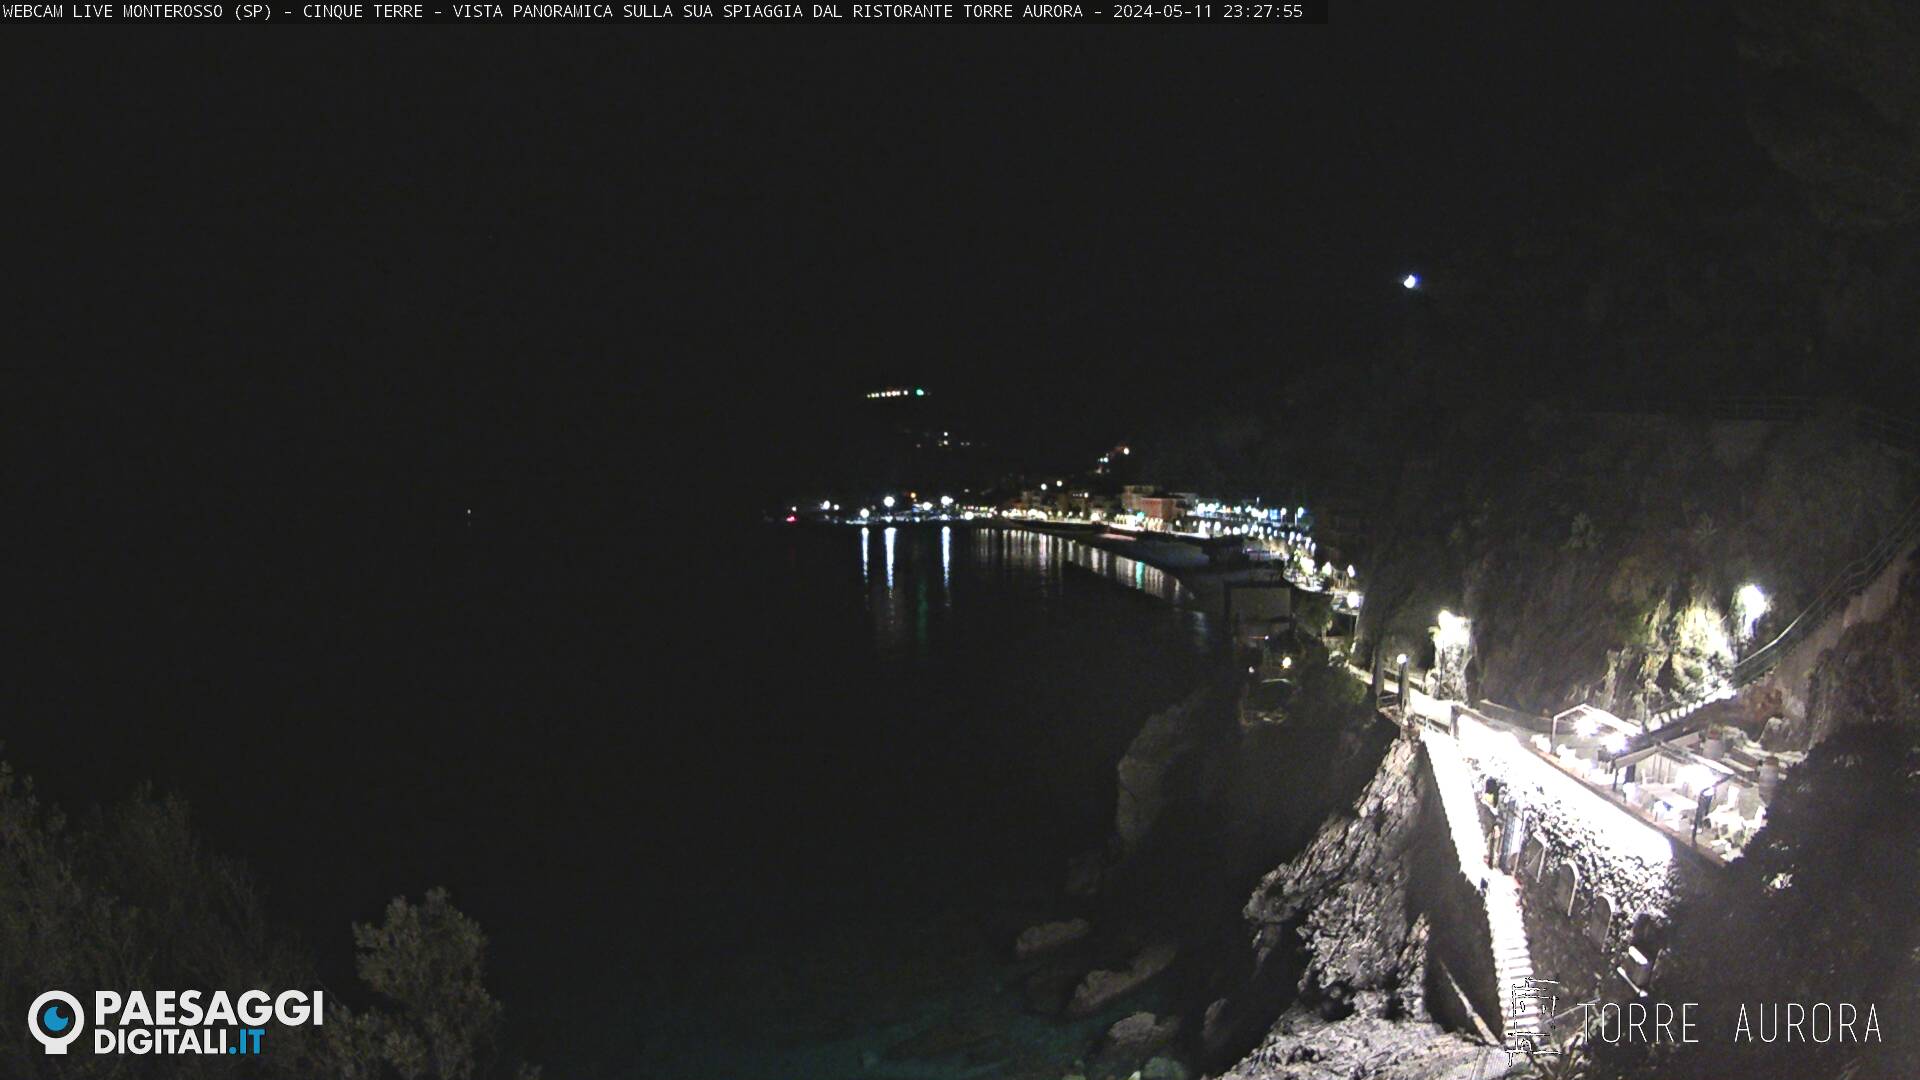 Monterosso al Mare (Cinque Terre) Me. 23:28